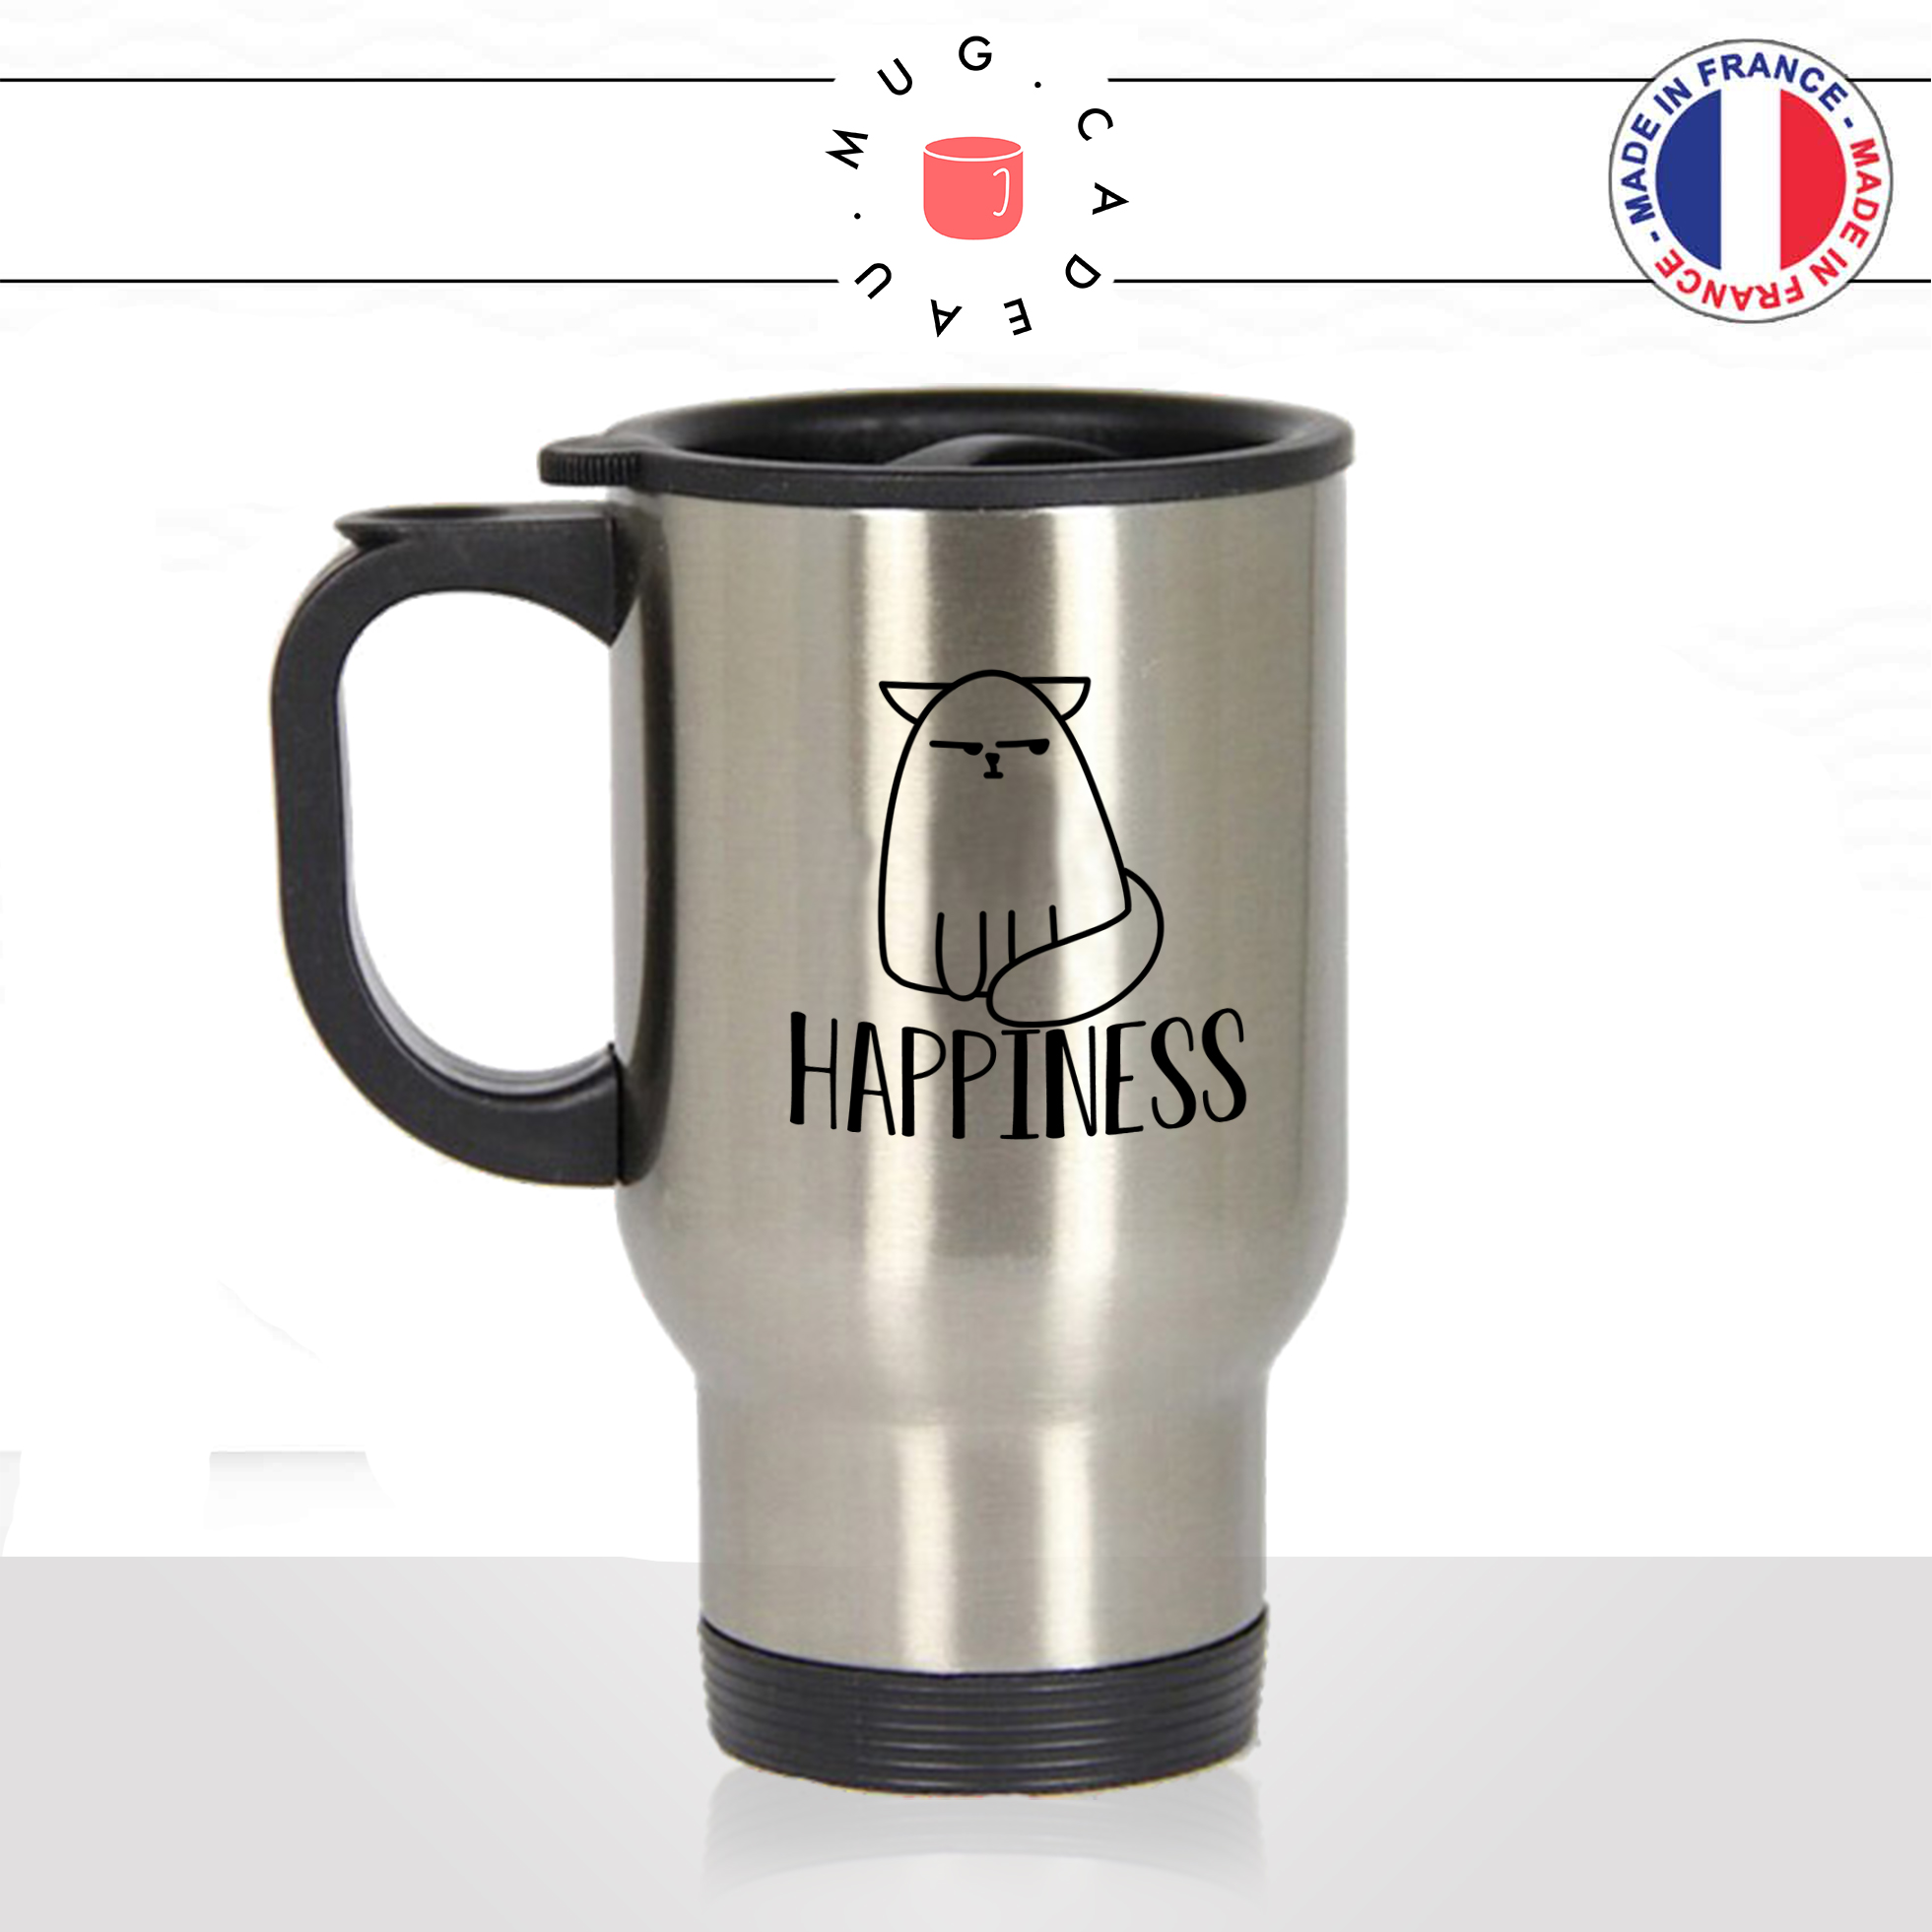 mug-tasse-thermos-de-voyage-café-thé-boisson-animal-animaux-chat-happiness-happy-content-chaton-drole-idée-cadeau-original-fun-cool